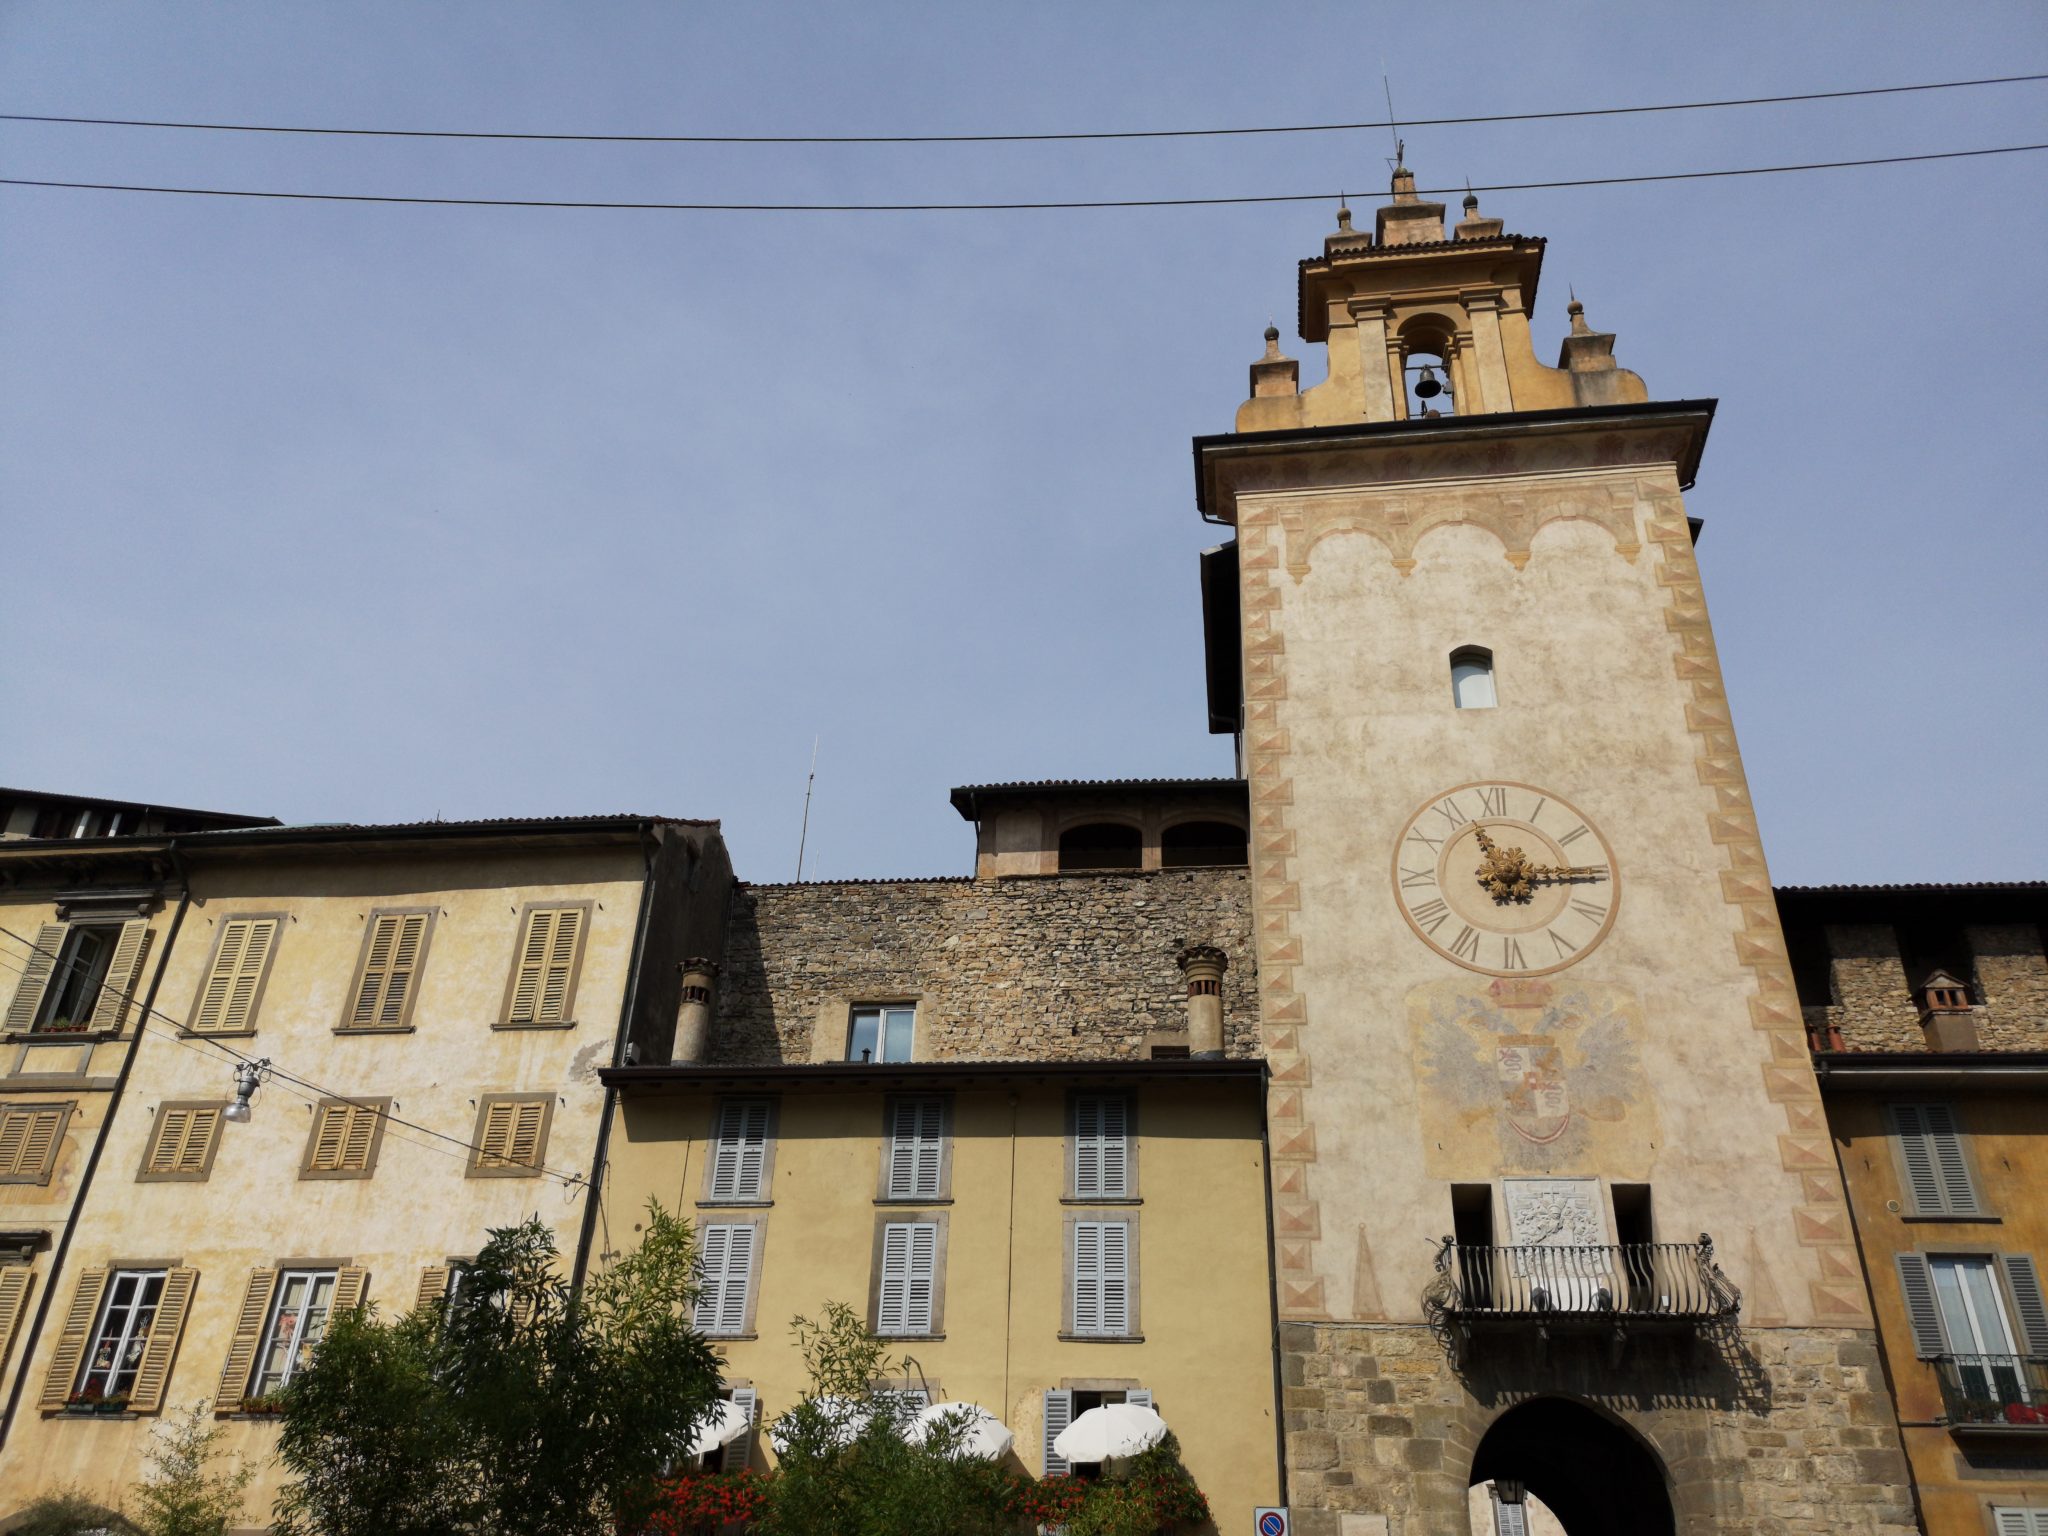 Ciąg budynków zbudowanych we włoskim stylu, stara wieża z zegarem na tle niebieskiego nieba